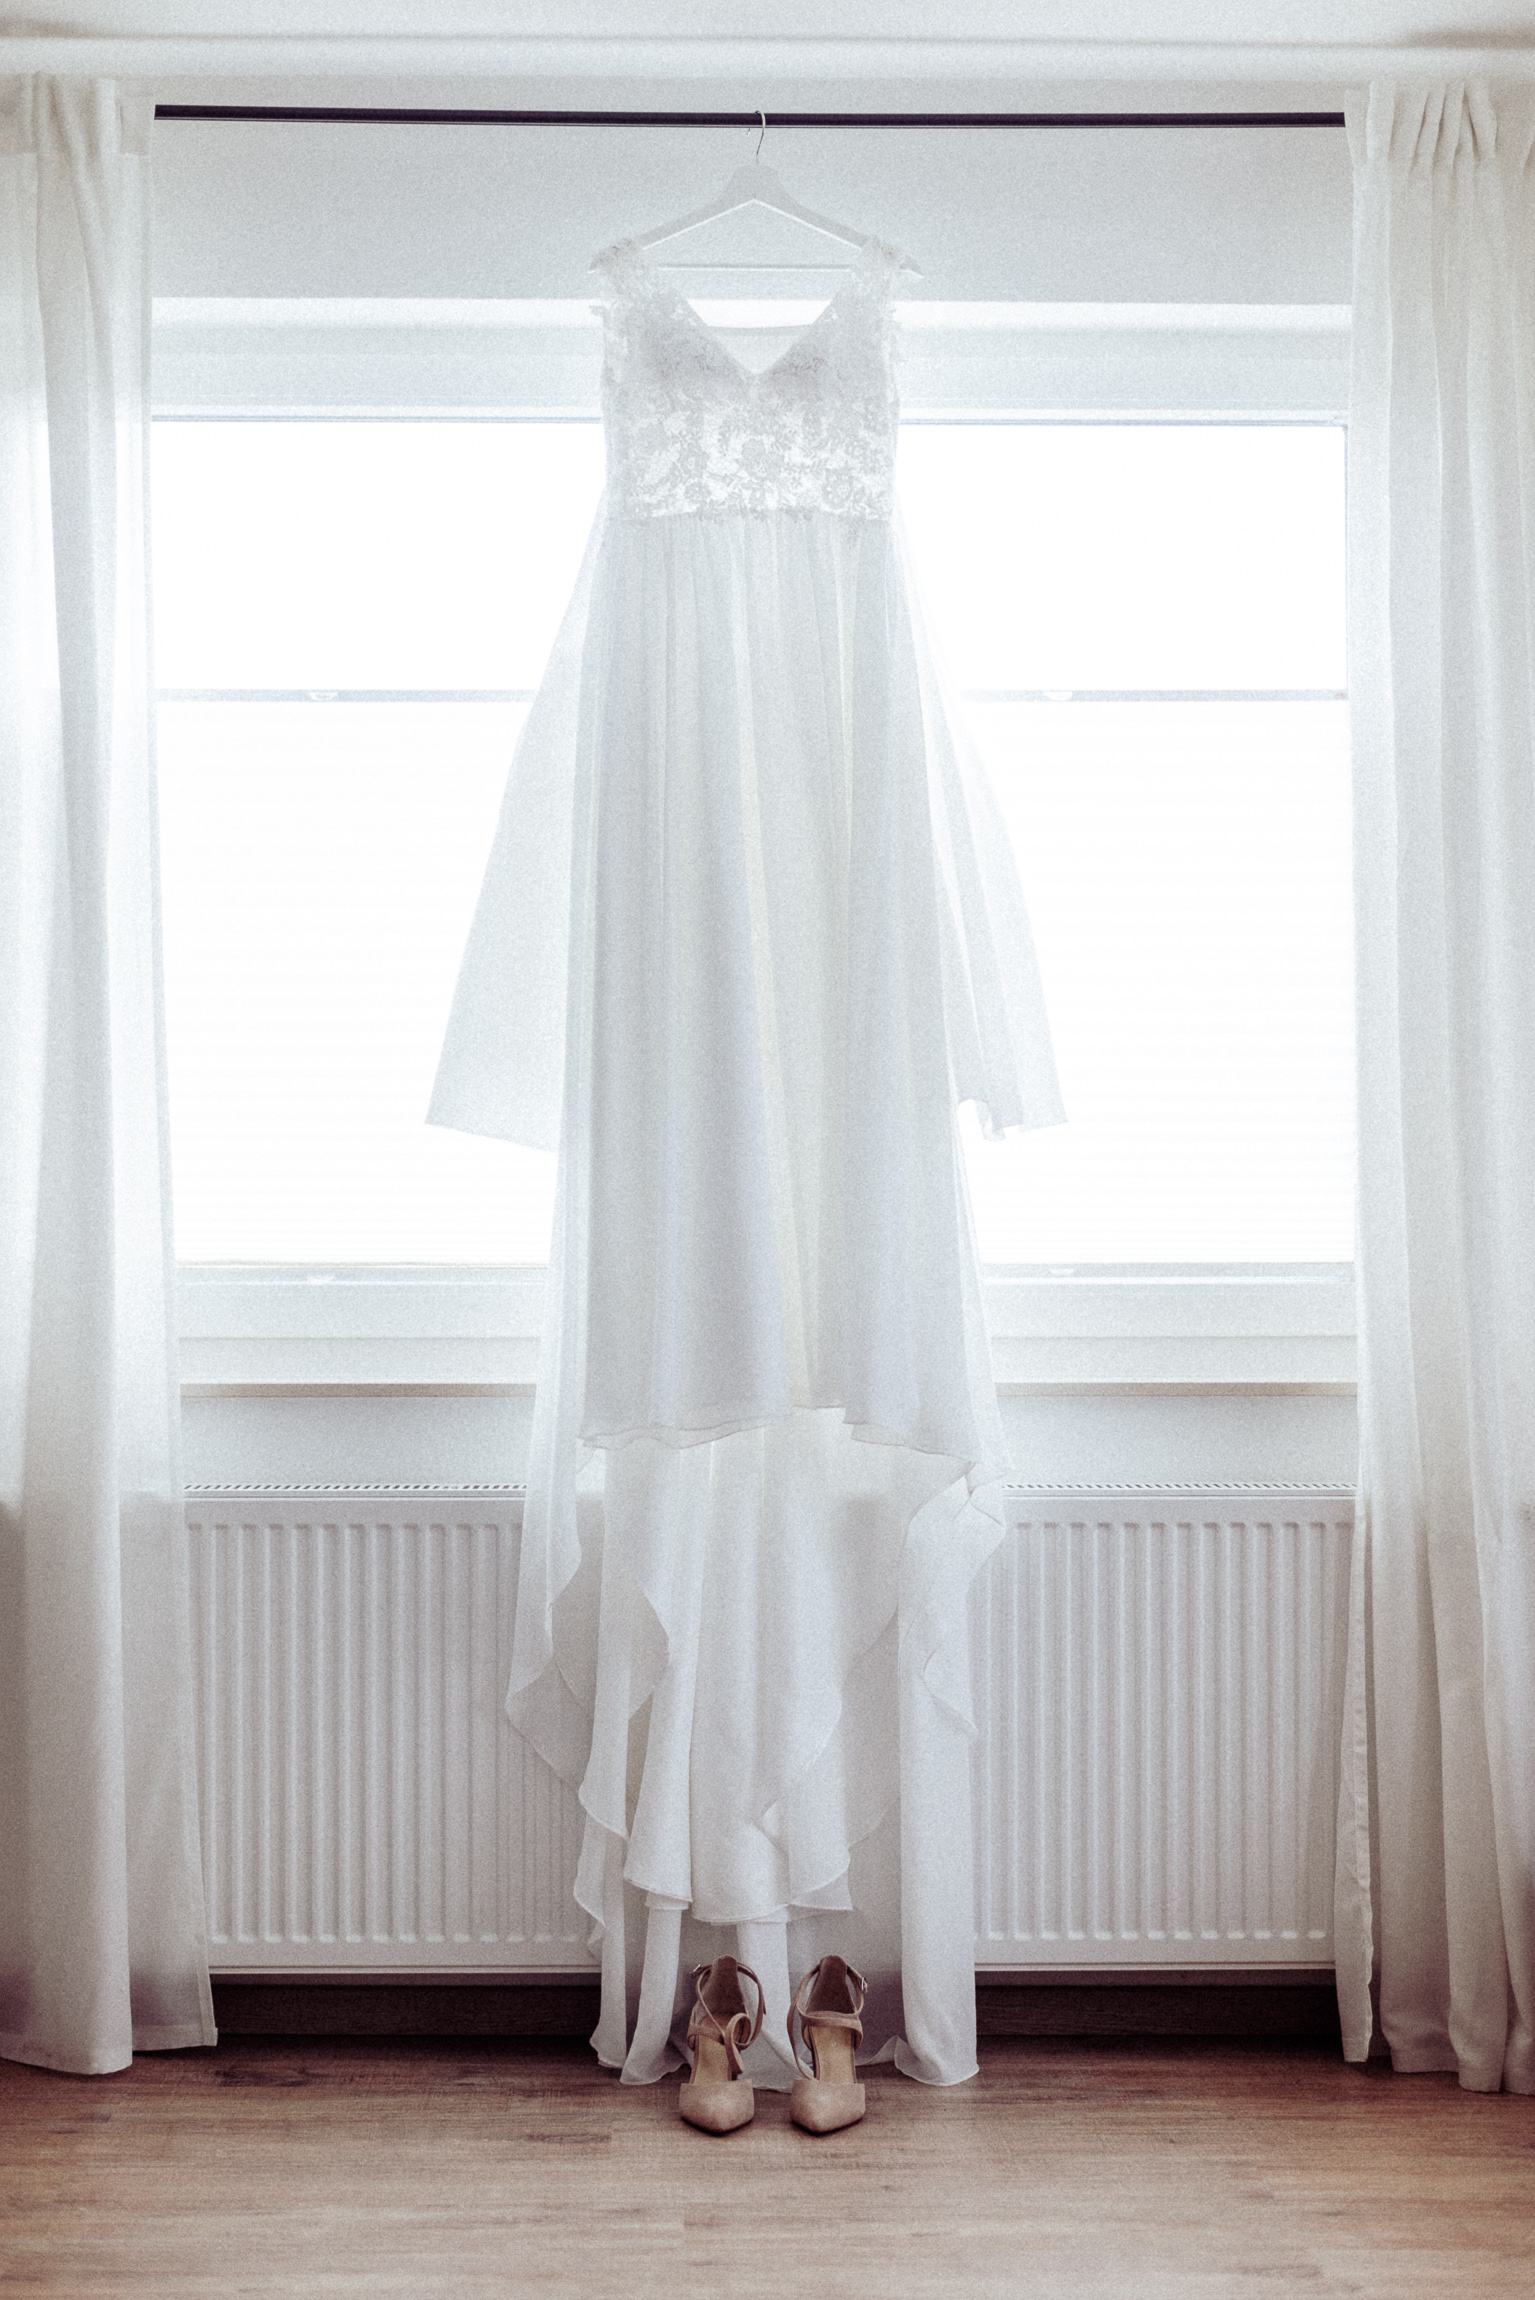 Brautkleid, Hochzeitsbild, hochzeitsfotograf